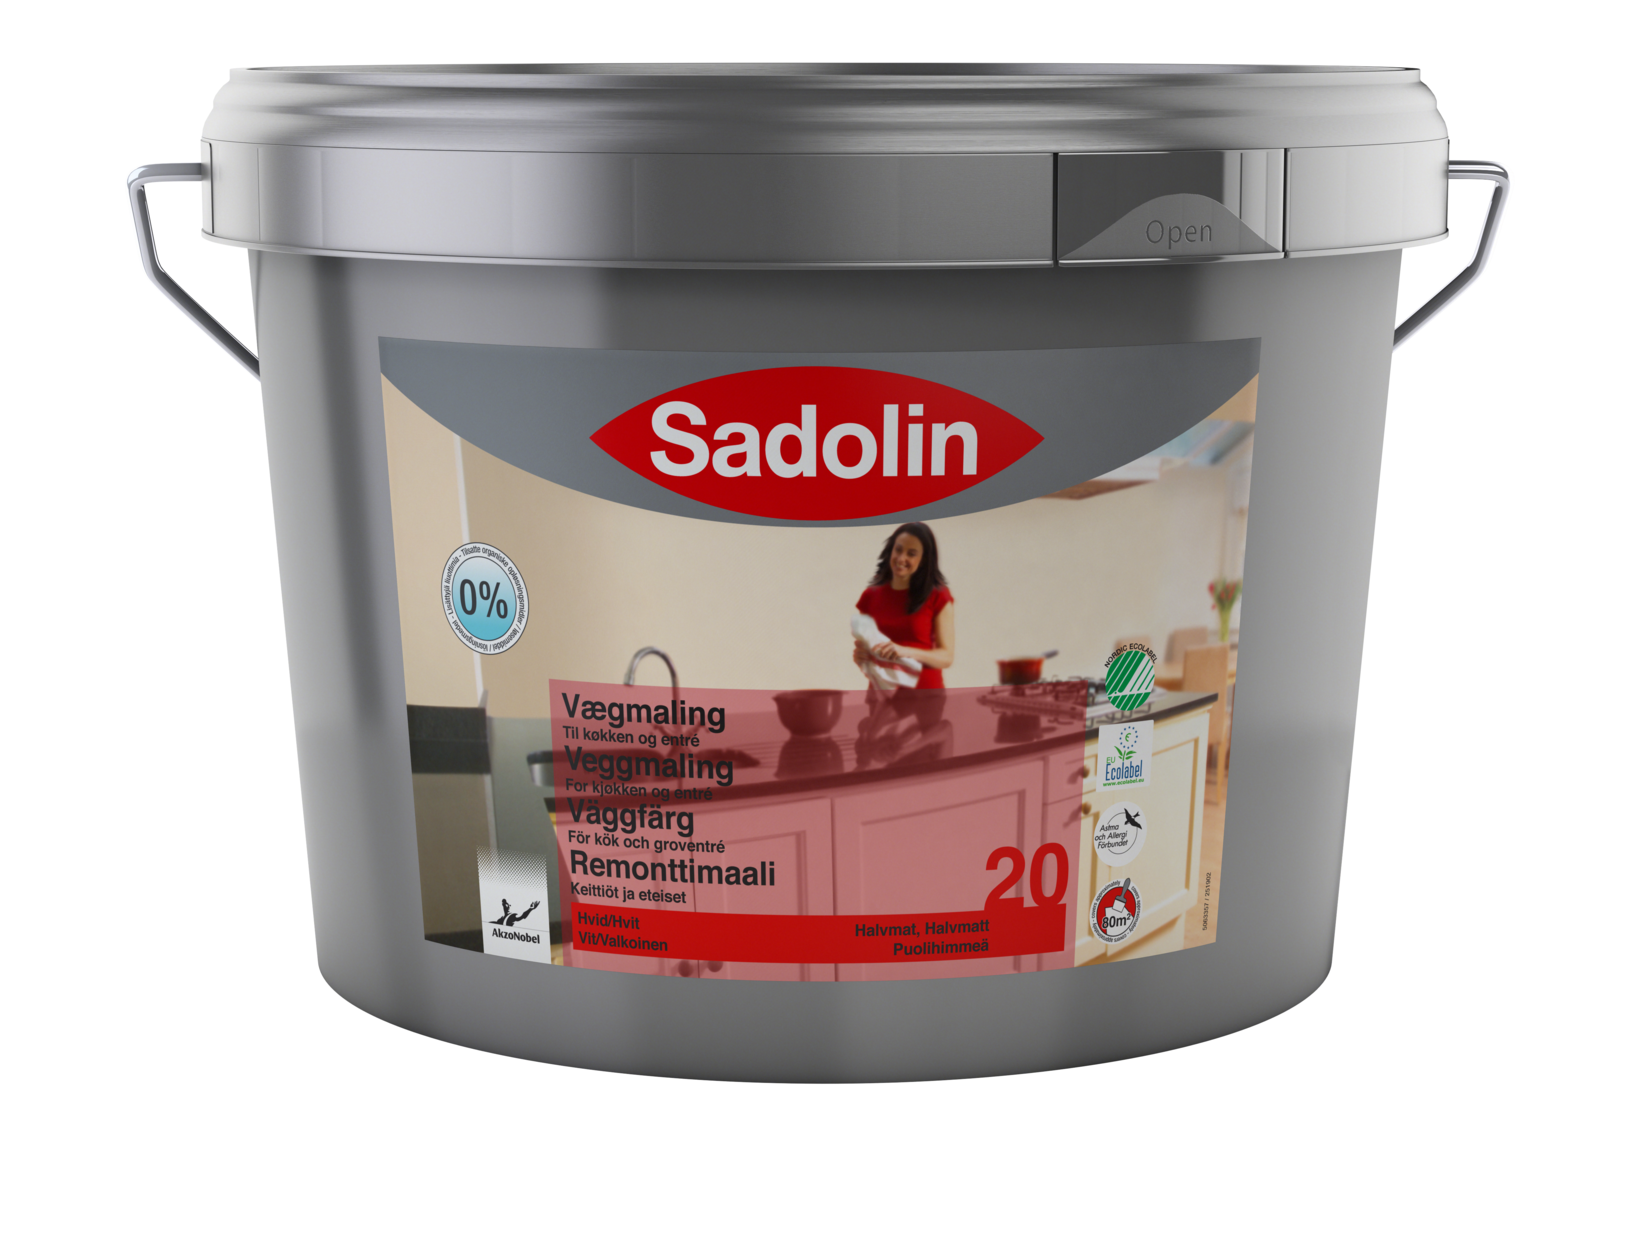 Sadolin Vægmaling 20 Halvmat 10,0L plast_Low-res (96 ppi) PNG_10415